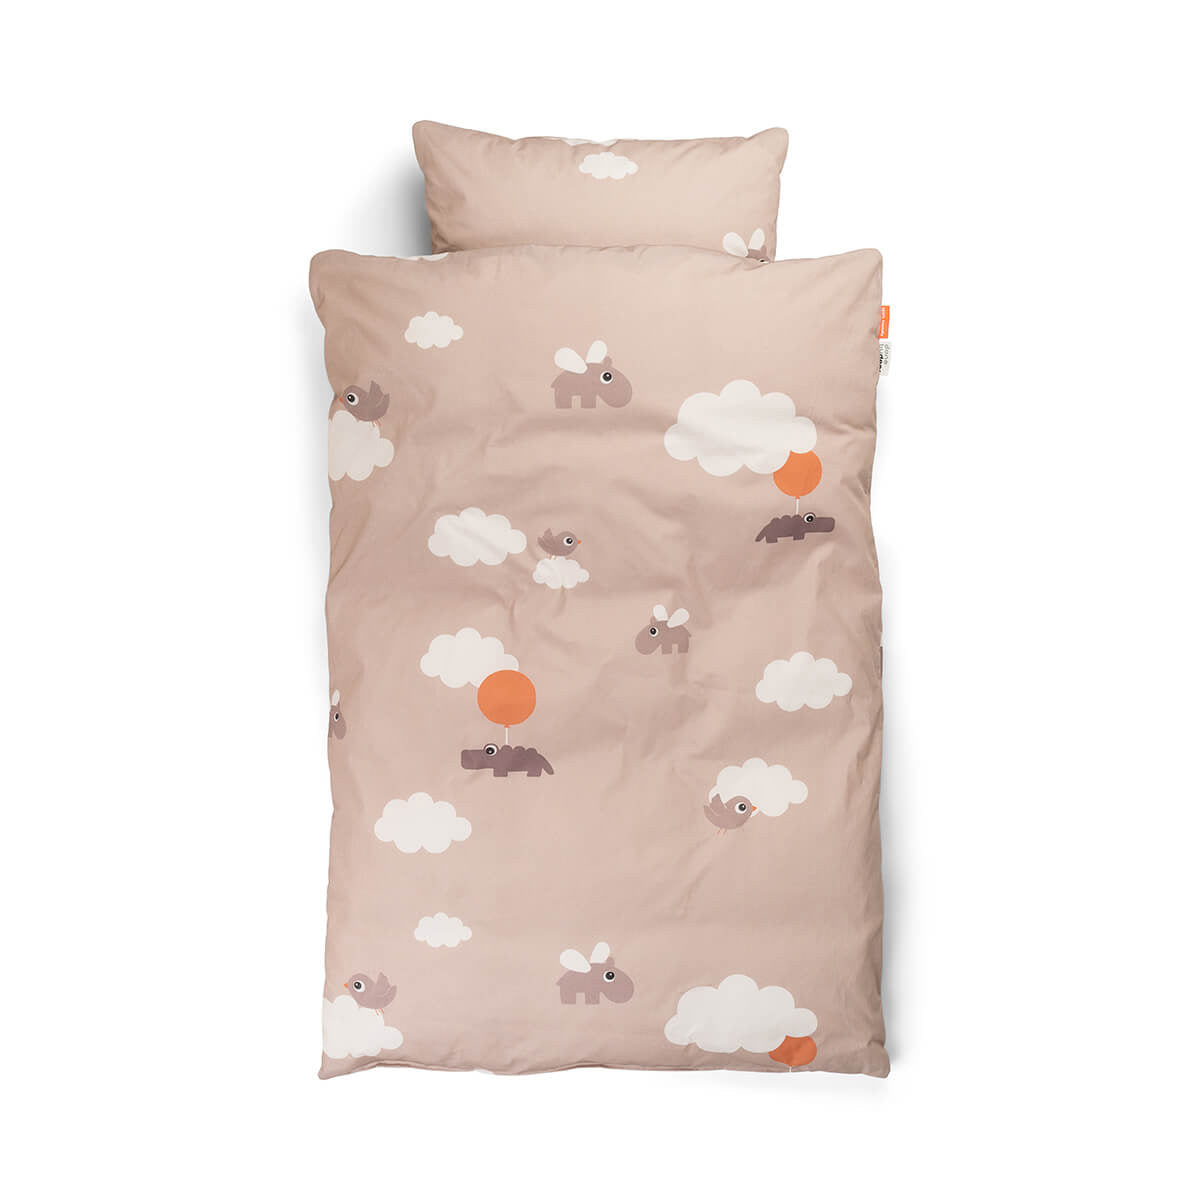 Met het superzachte en comfortabele Done by Deer beddengoed junior GOTS happy clouds powder slaapt je kleintje als een roosje! Het roze kinderbeddengoed met wolken en ballonnen voelt fijn aan. VanZus